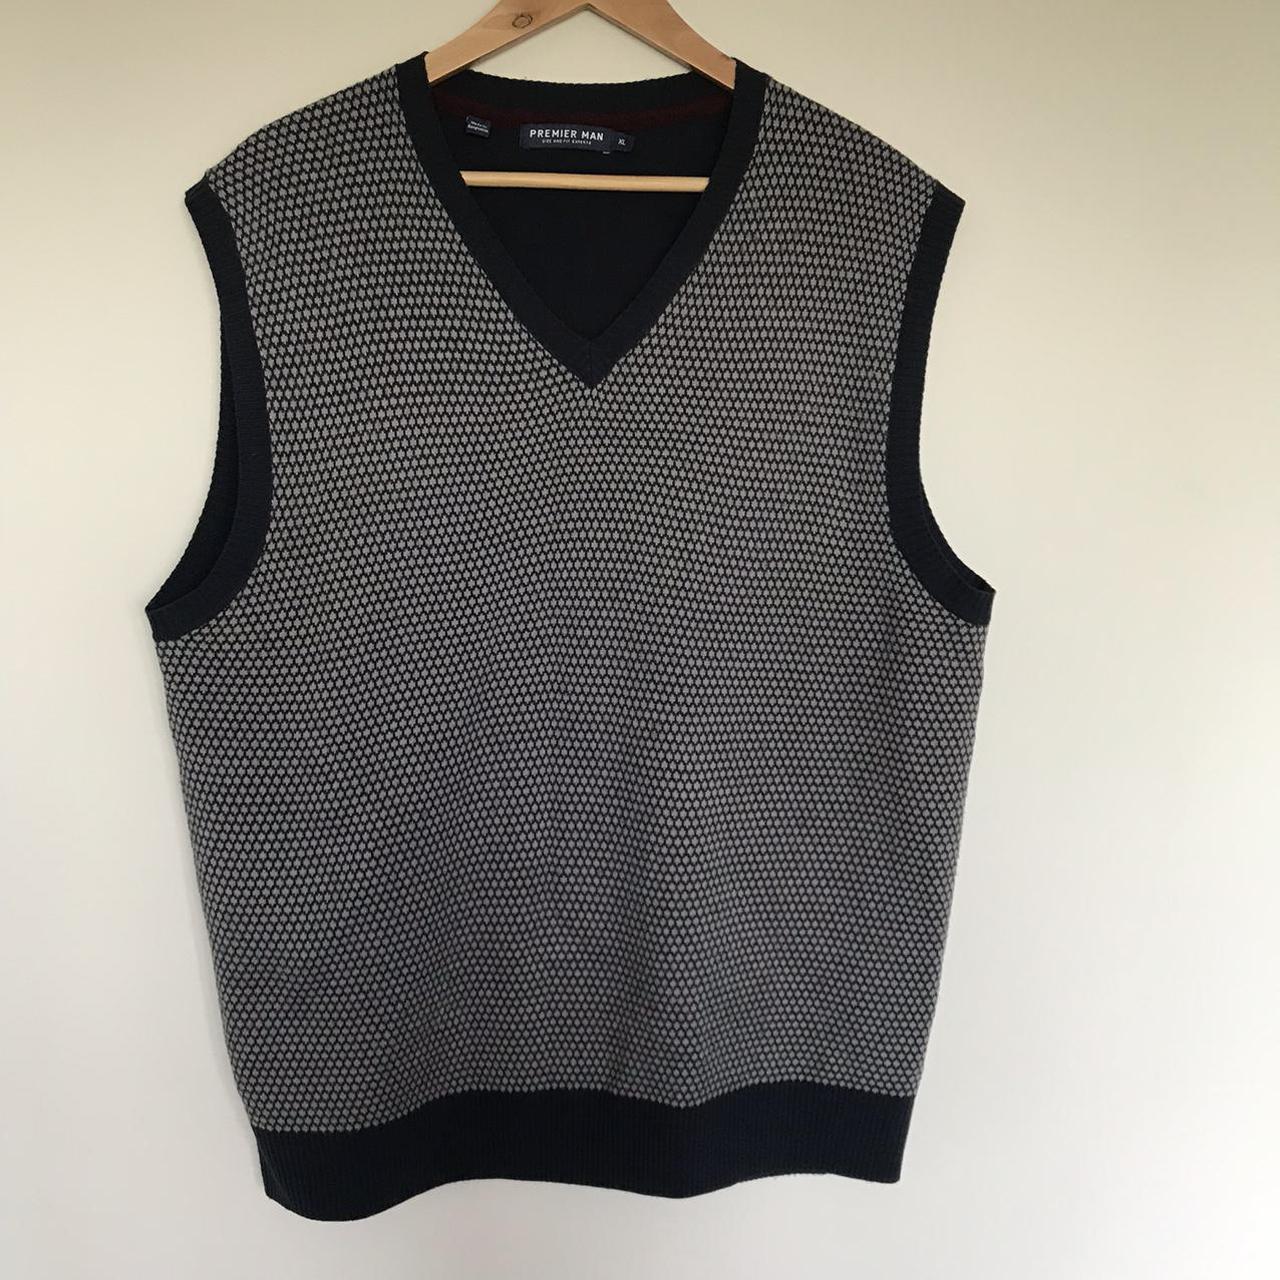 Men’s Vintage Sweater Vest XL V neck knitted tank... - Depop